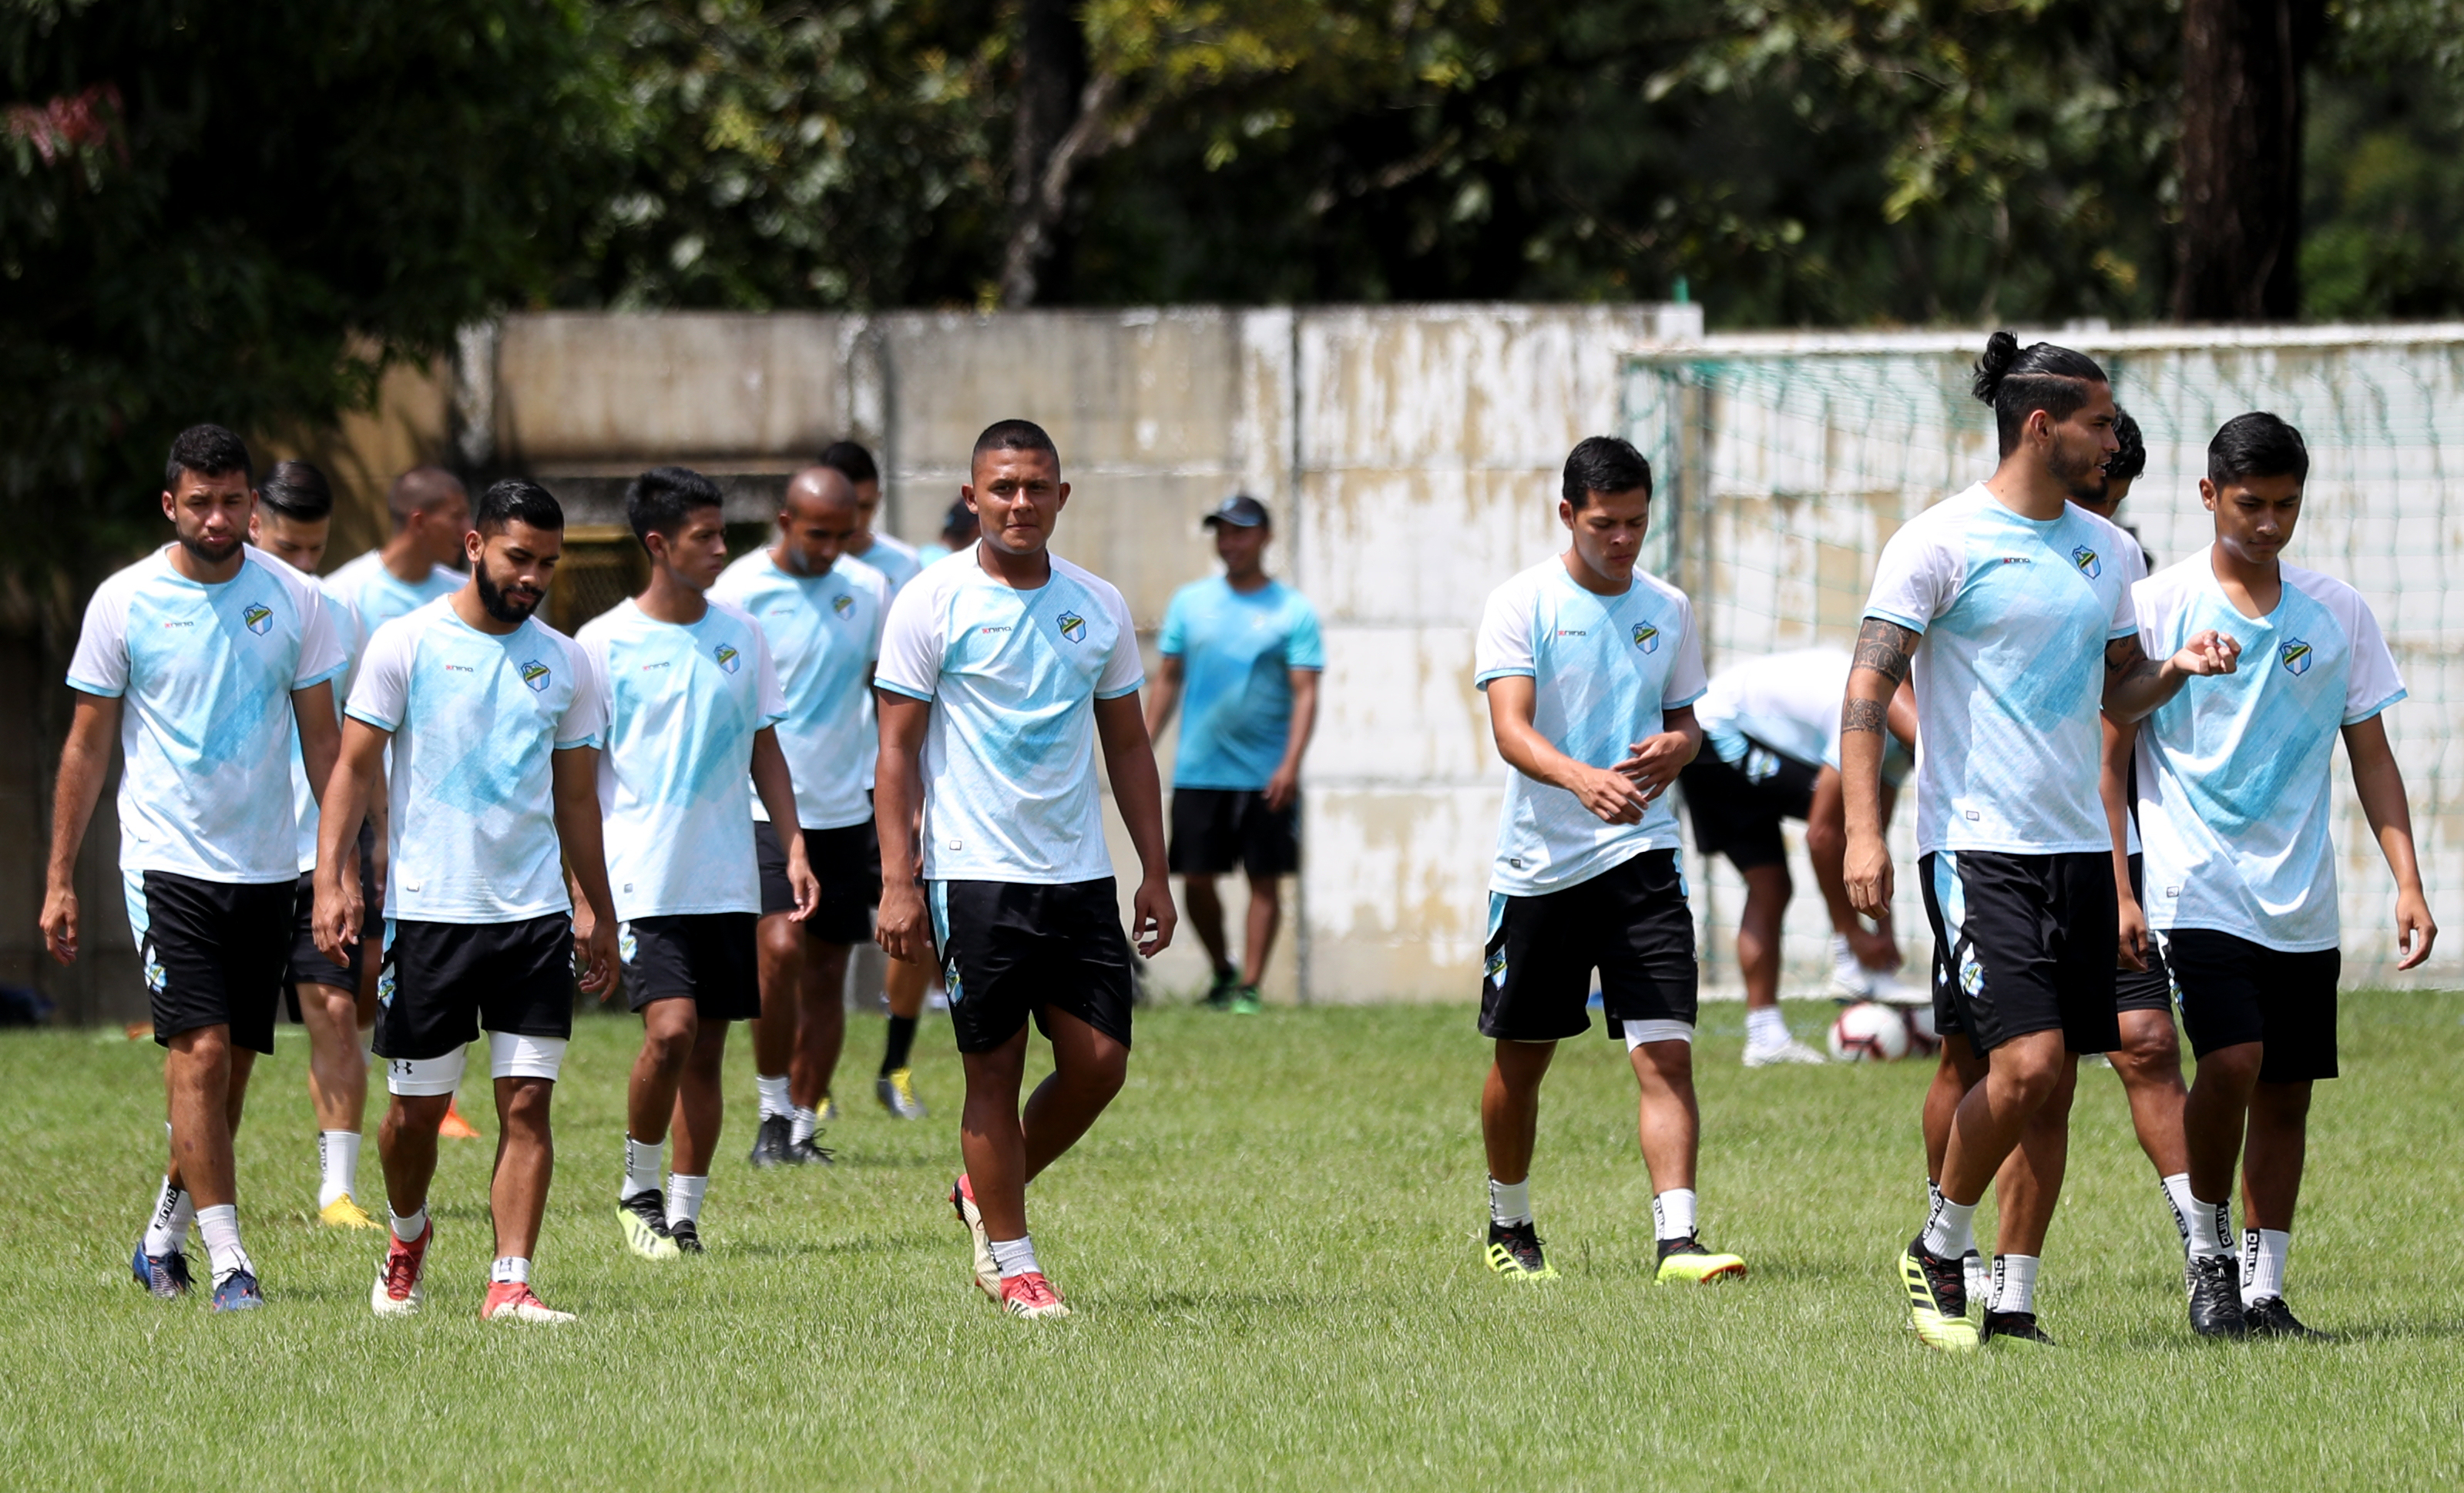 Si el Ministerio de Salud da el aval, los jugadores podrían volver a los entrenamientos. (Foto Prensa Libre: Hemeroteca PL)